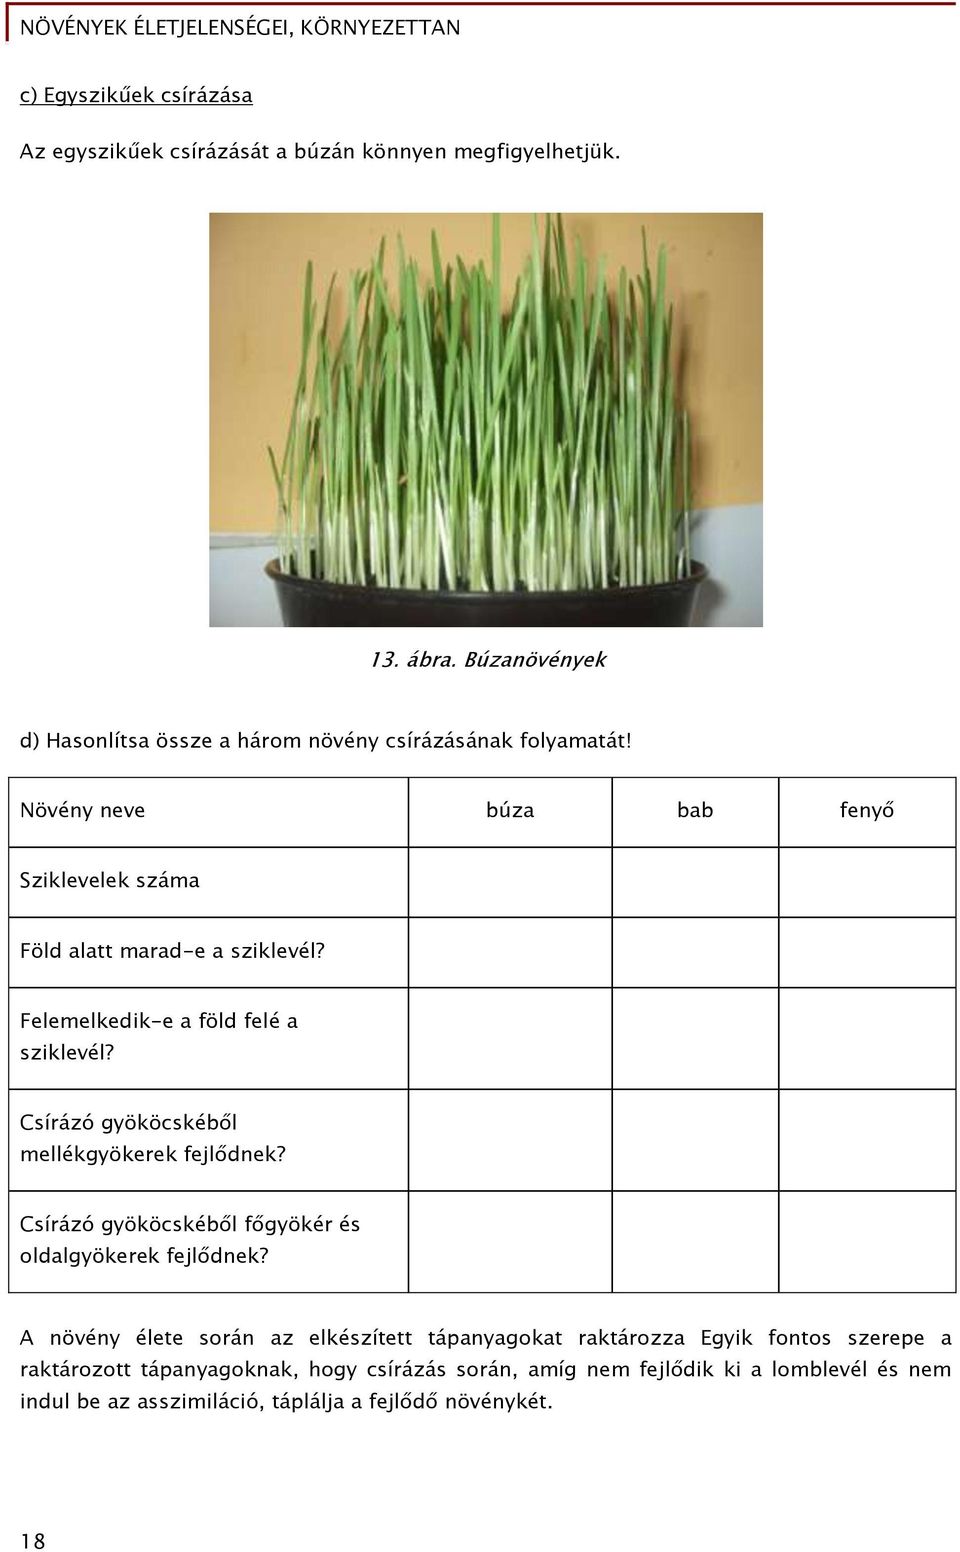 Növények életjelenségei, környezettan - PDF Free Download